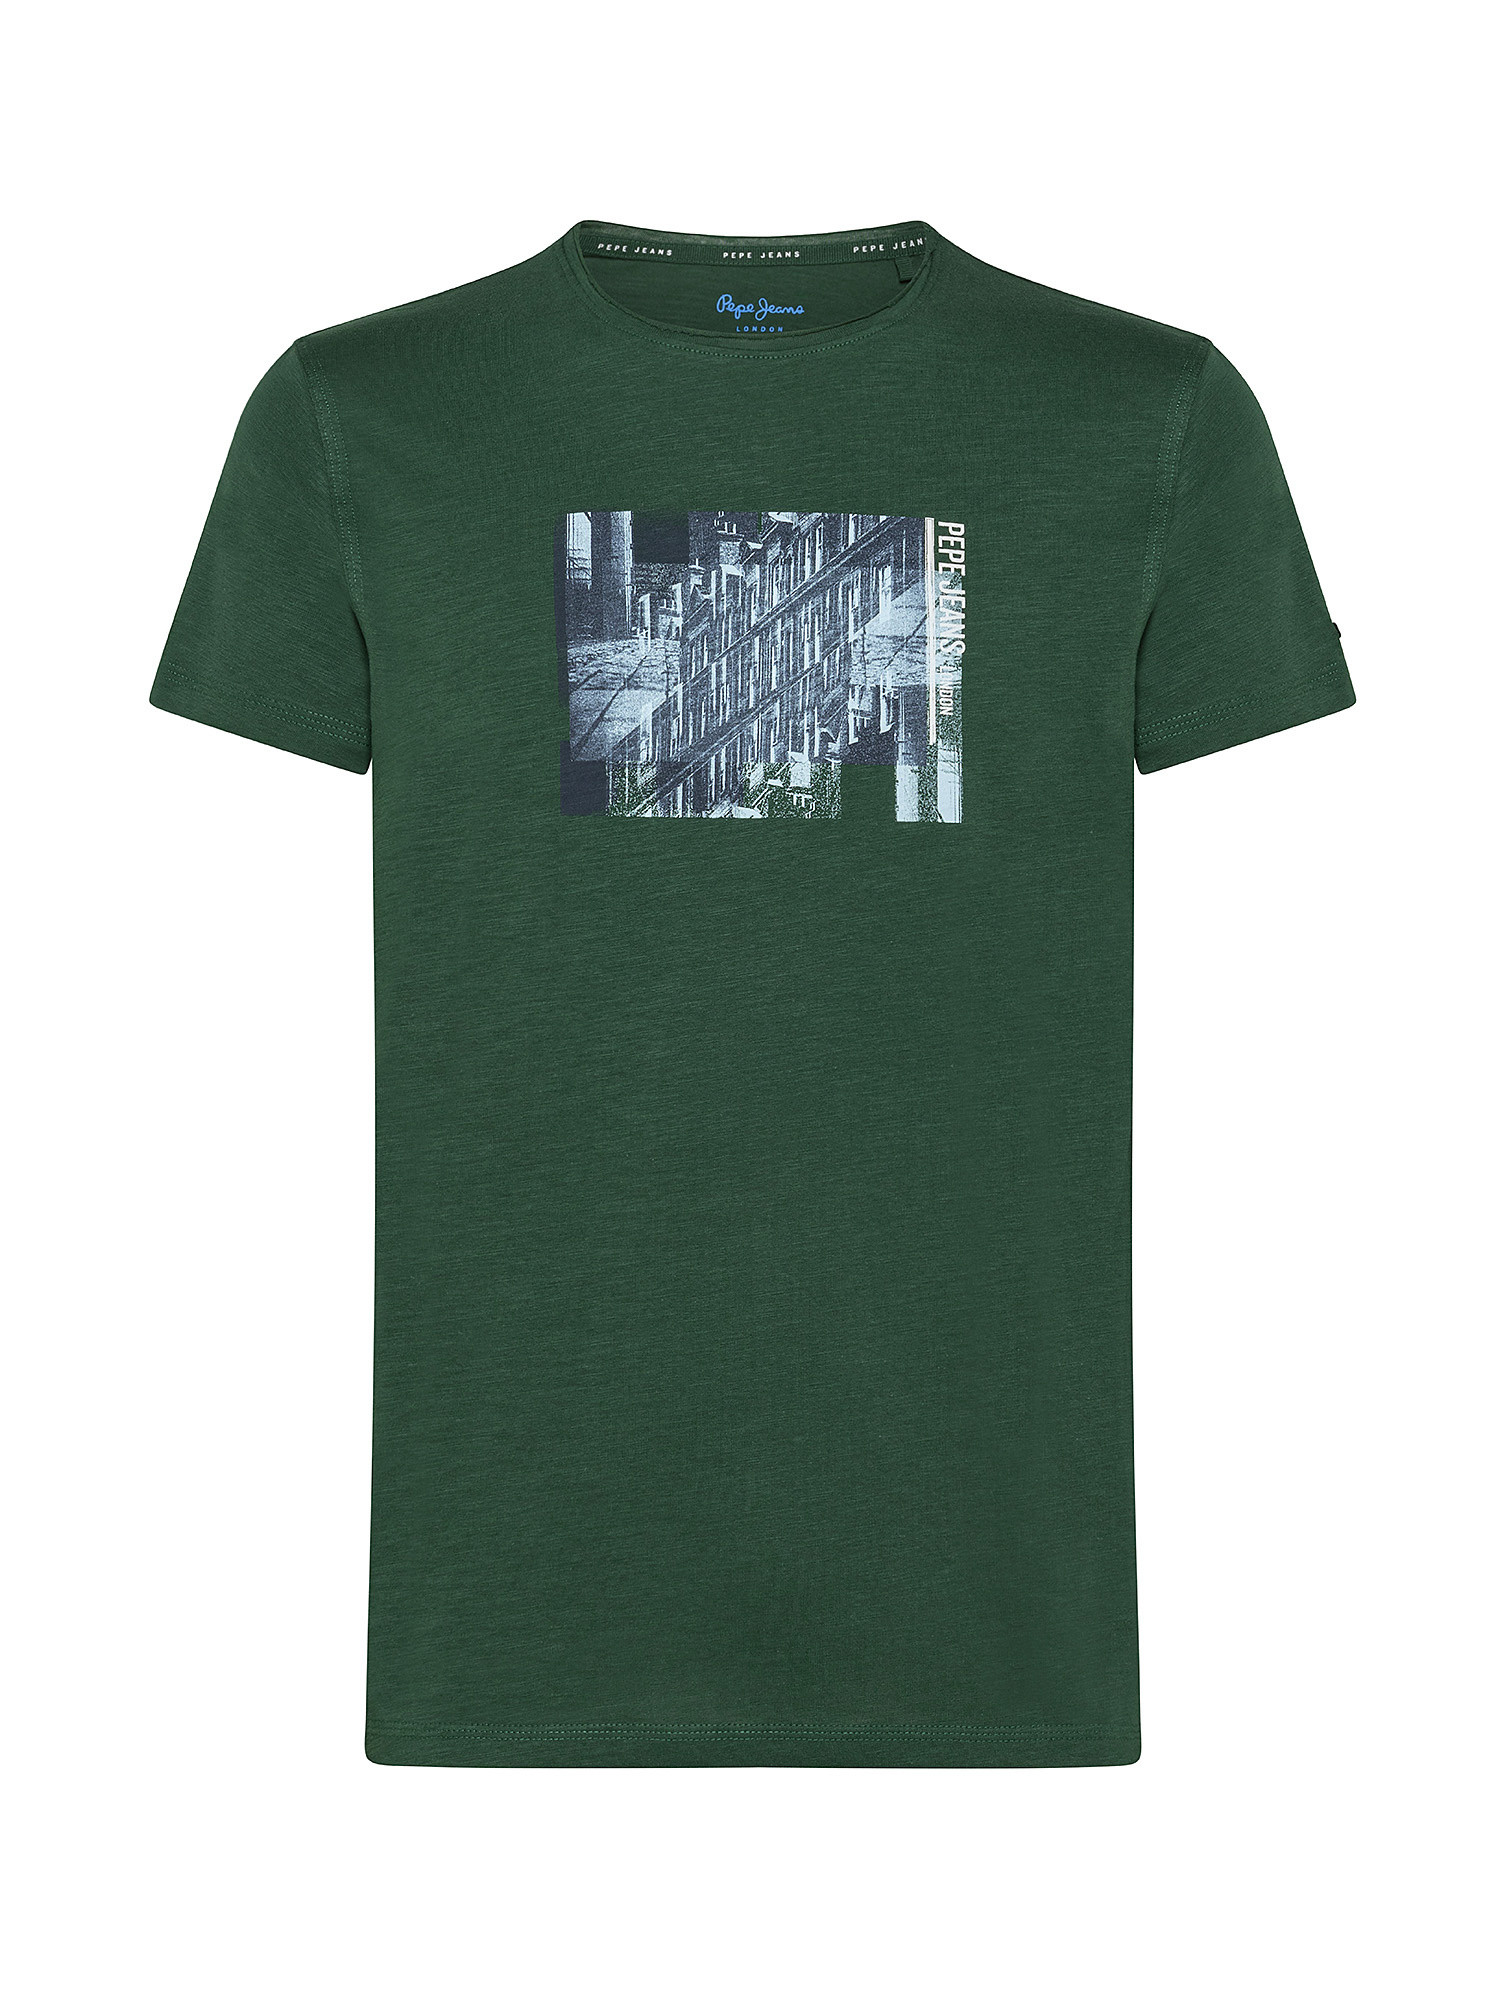 Sherlock cotton T-shirt, Green, large image number 0